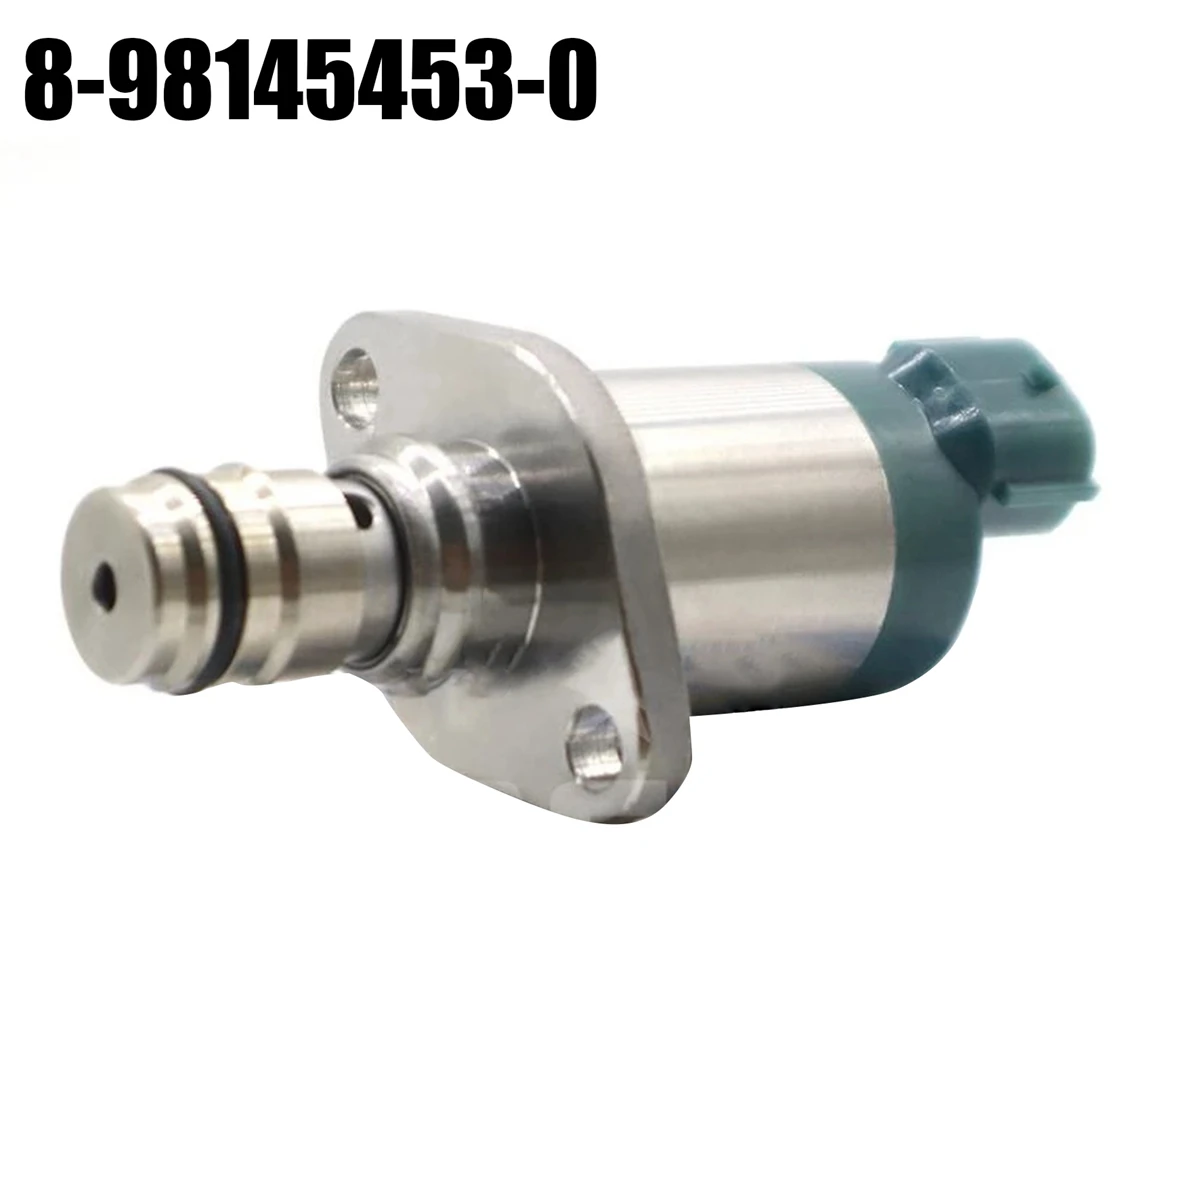 8-98145453-0 לחץ יניקה שליטה שסתום SCV רכב עבור איסוזו D-מקס 2.5 ו-3.0